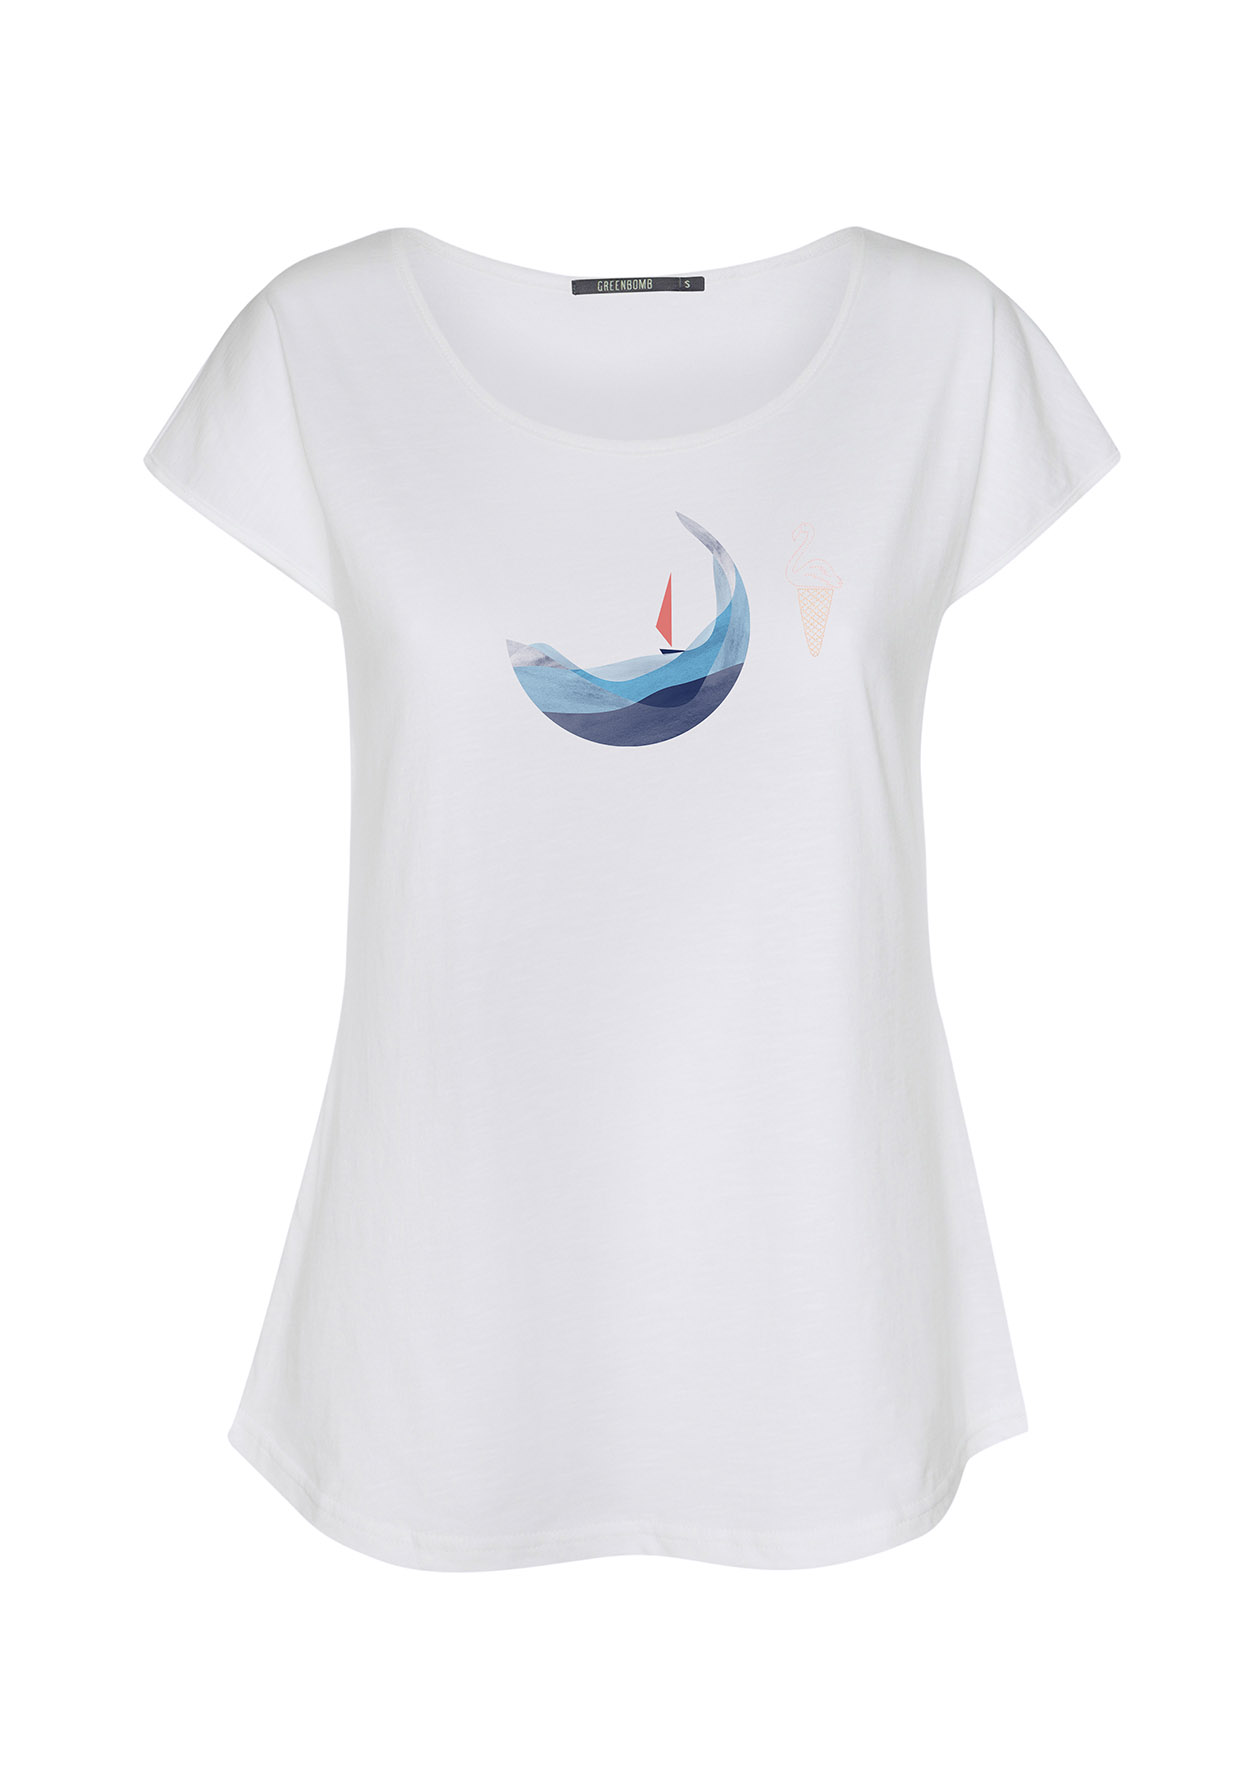 Damen Shirt Segelboot